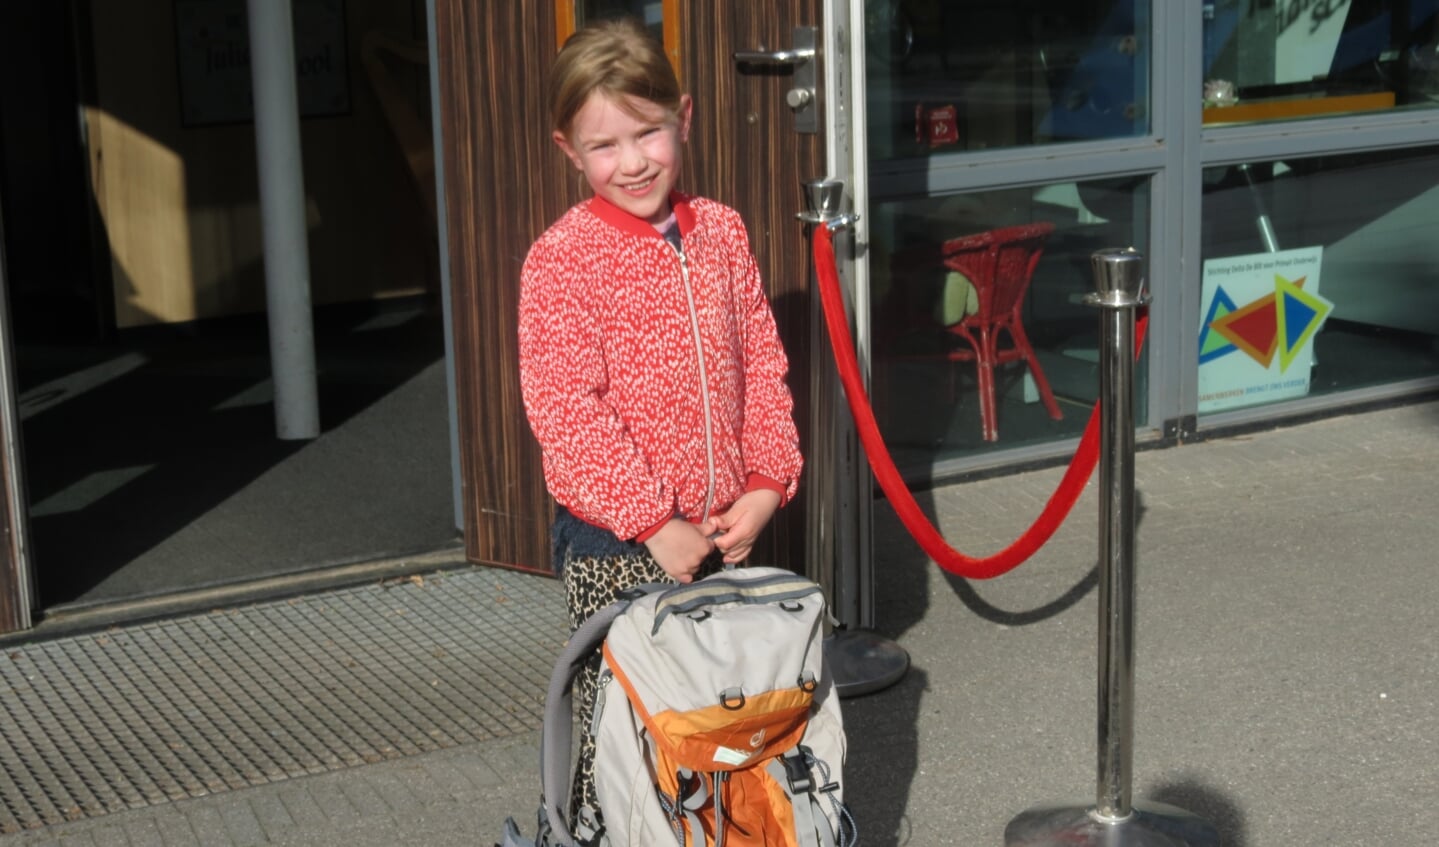 Jasmijn gaat met een grote tas de school in.